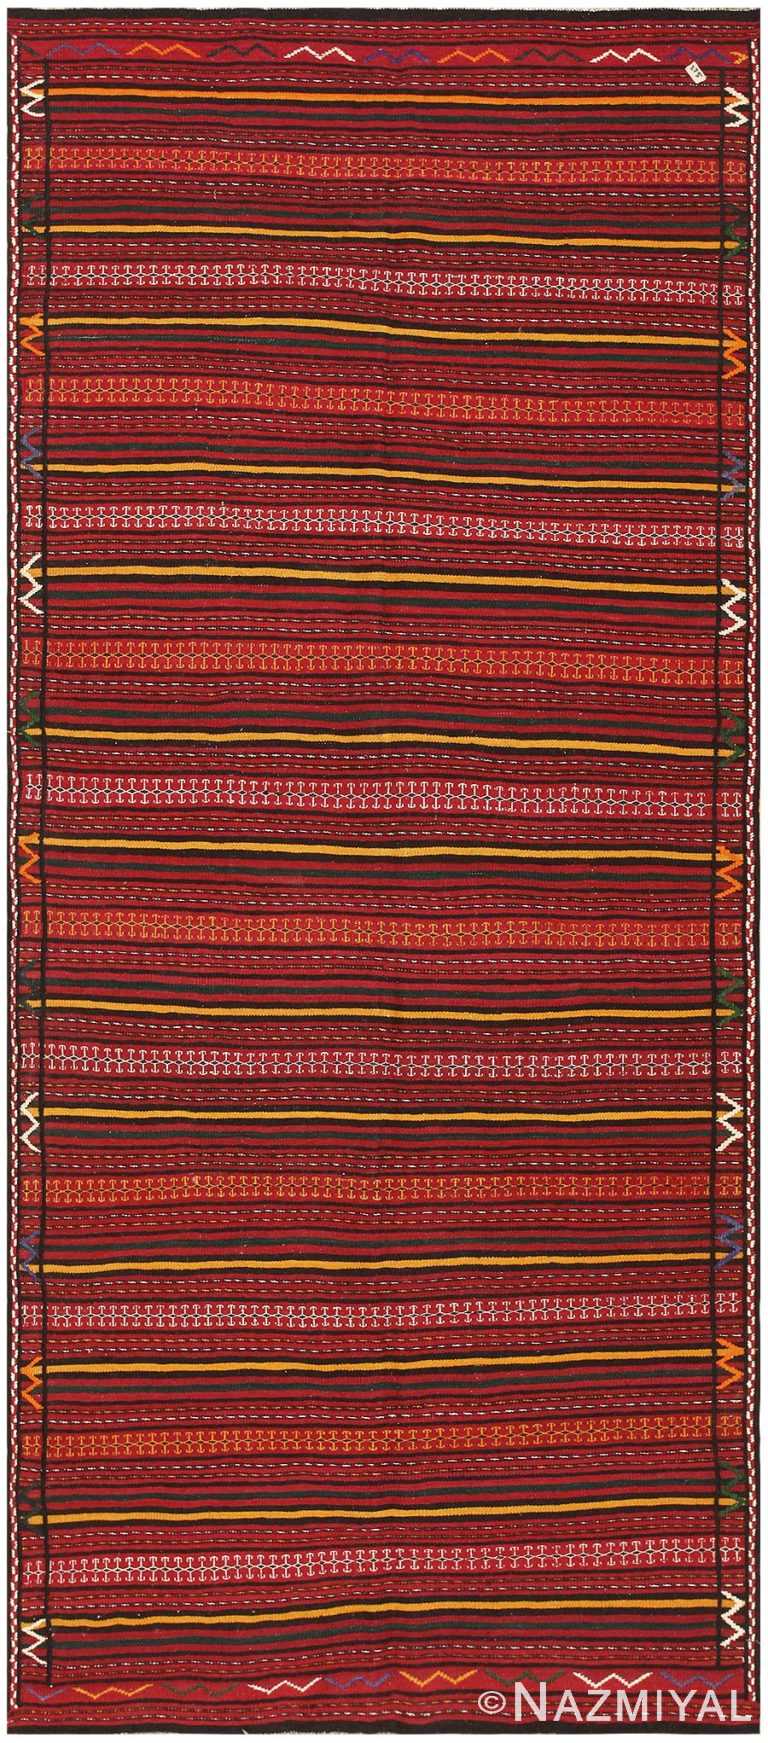 Vintage Turkish Carpet 50197 Detail/Large View